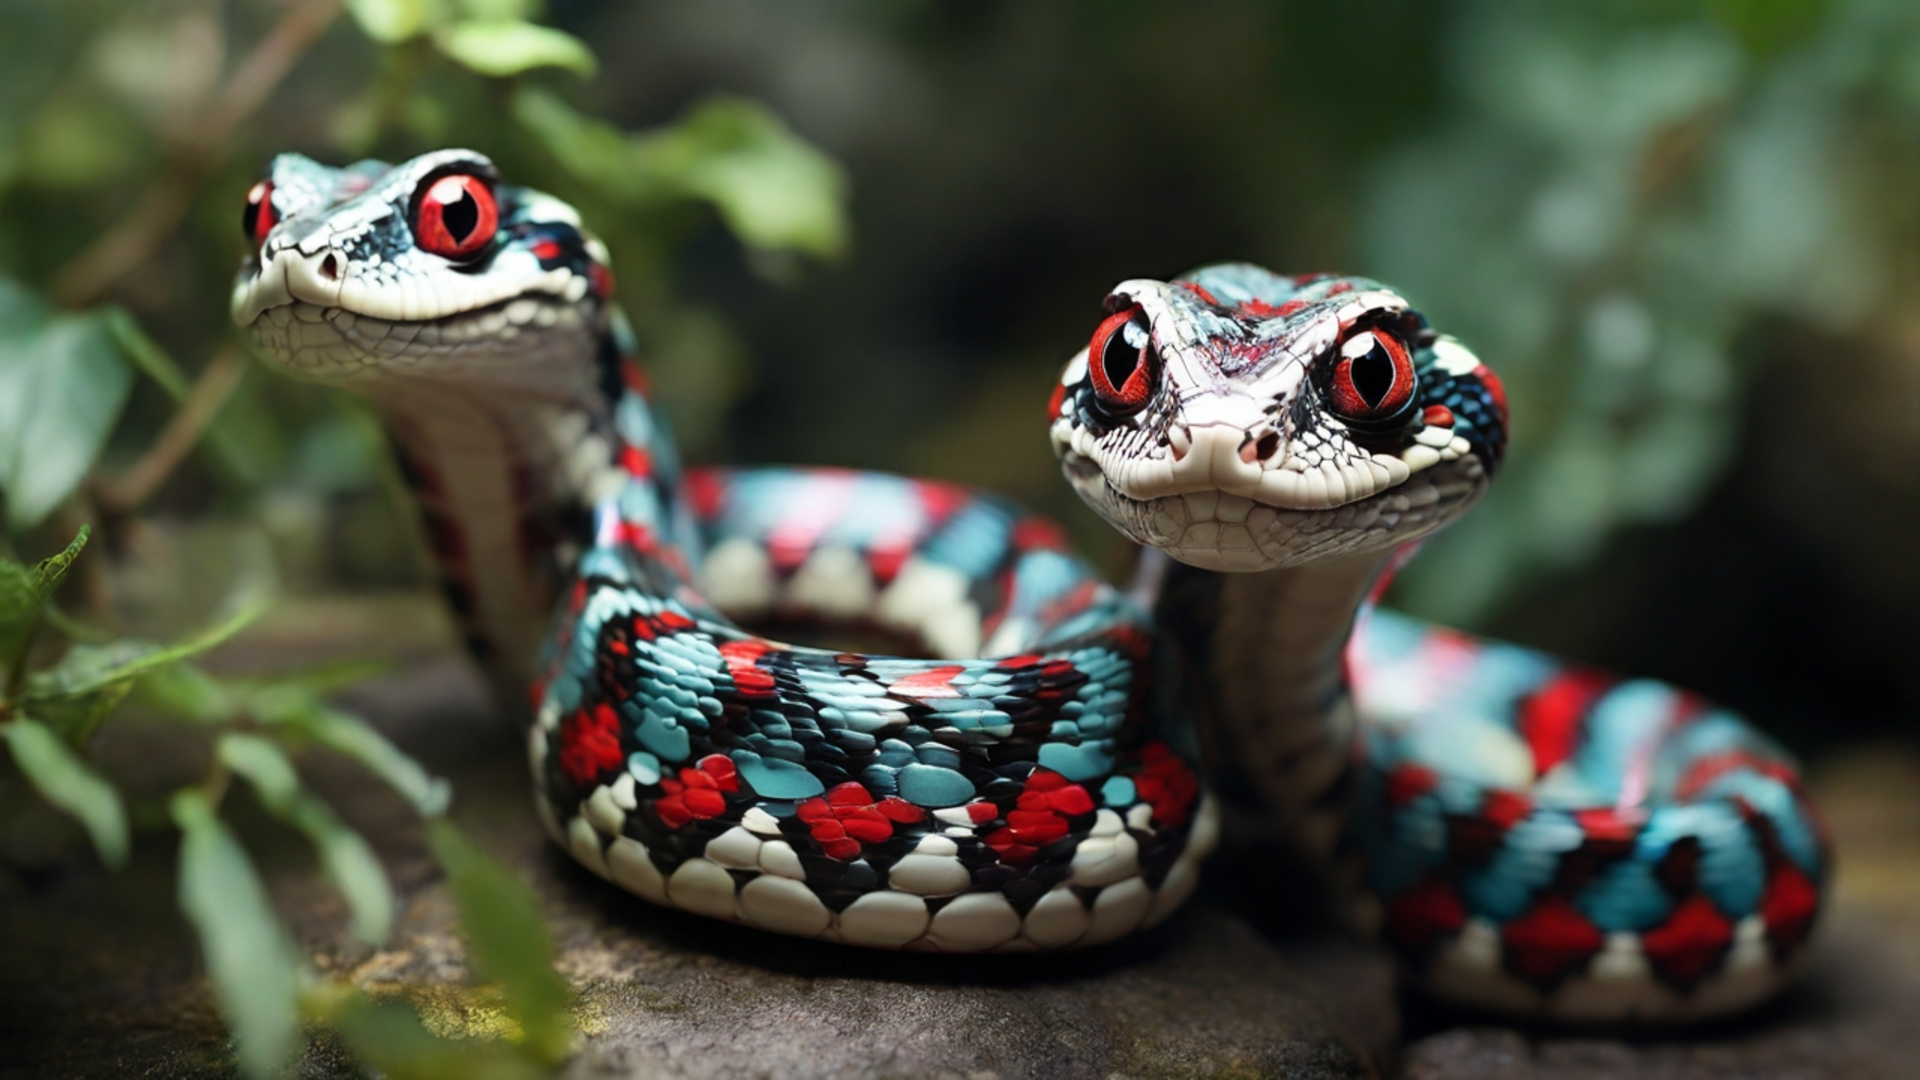 Cute Snakes by AnimeHead